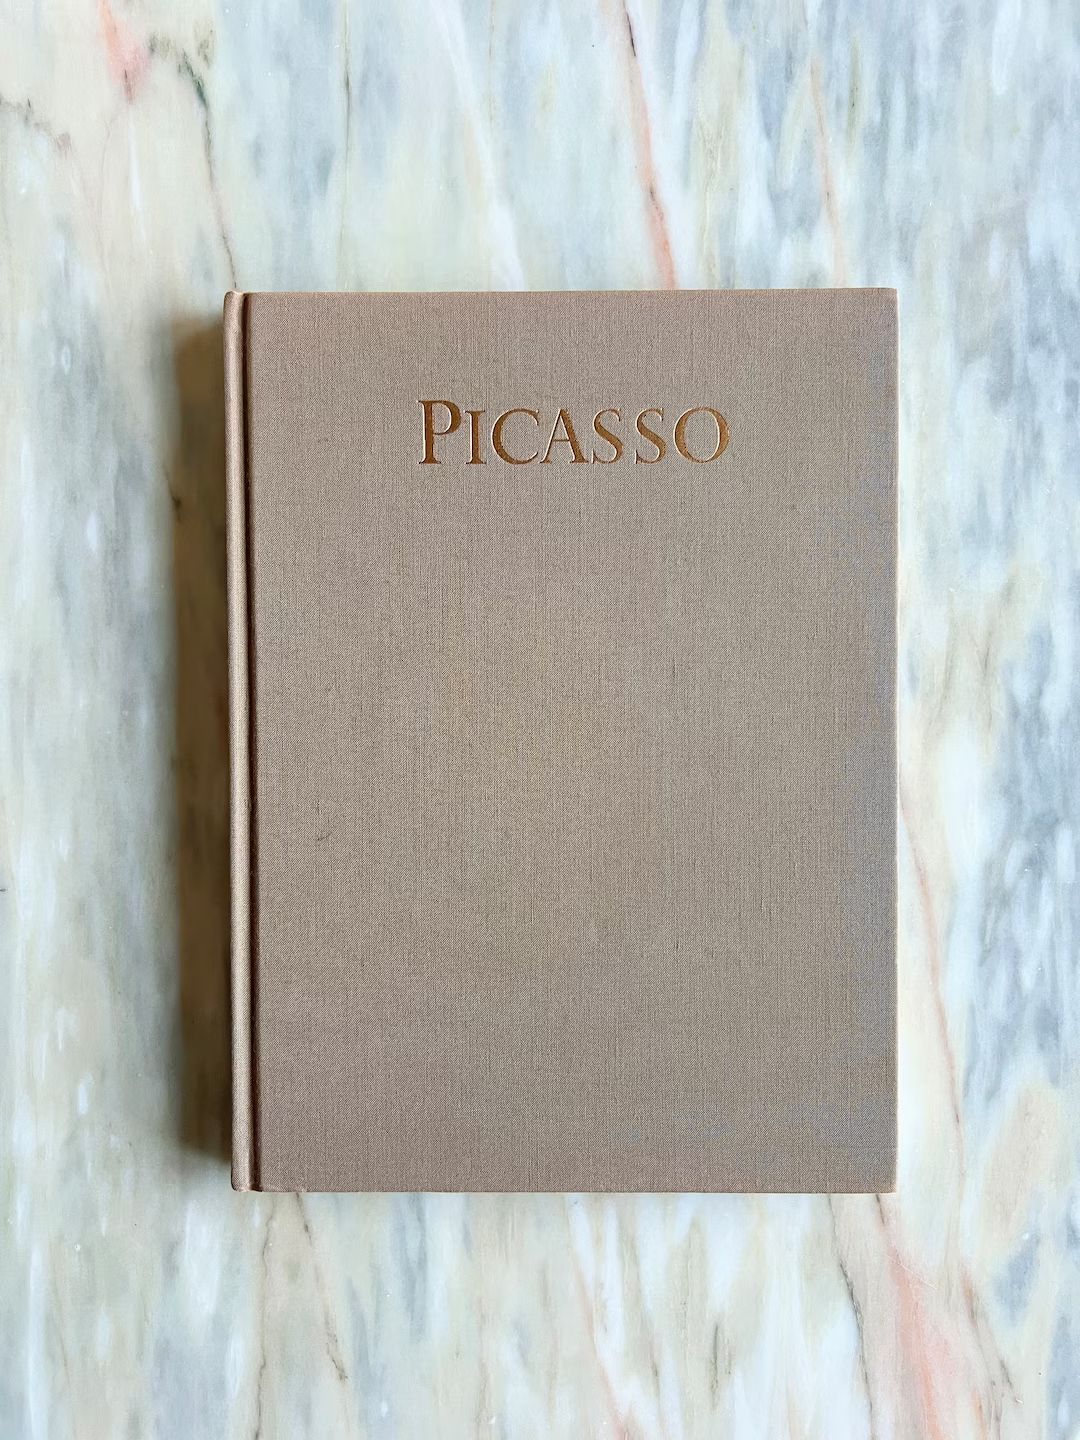 1983 Picasso - Etsy | Etsy (US)